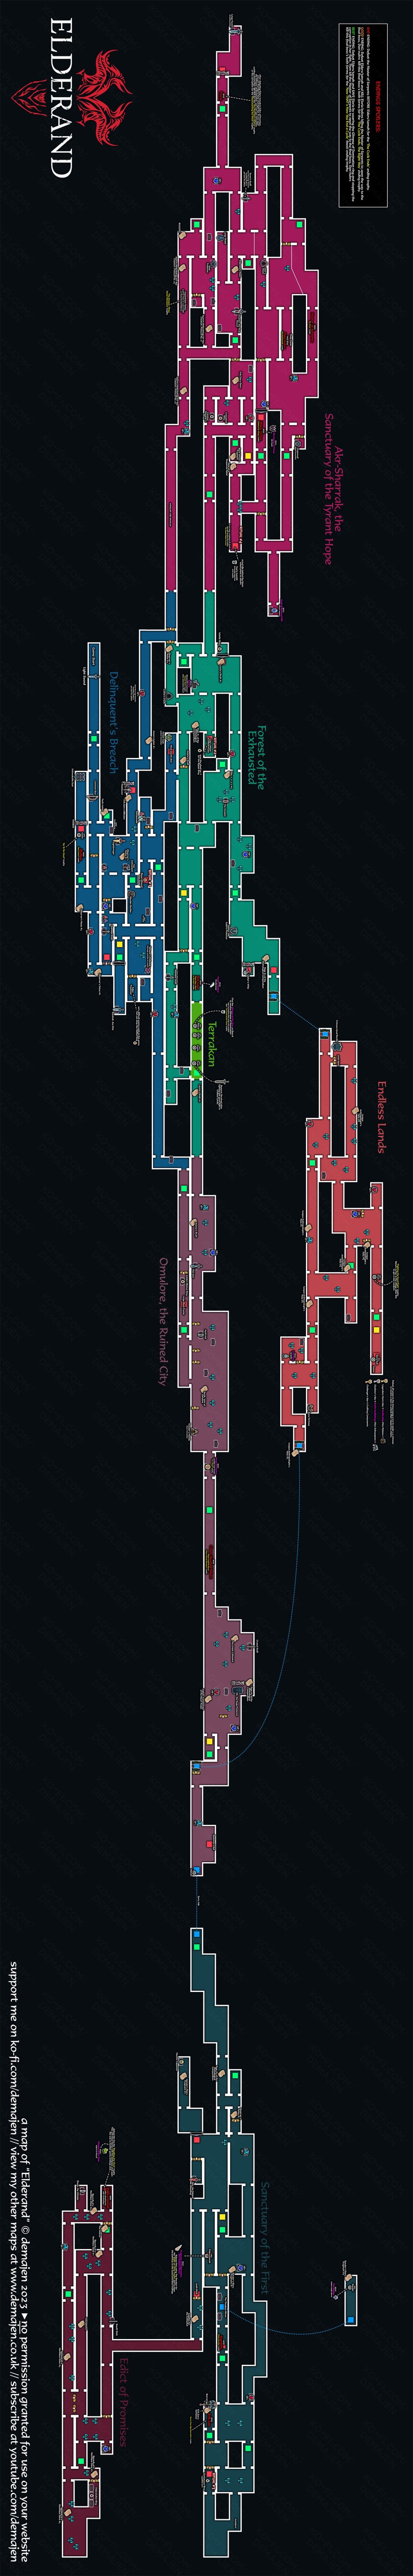 【PC游戏】类银河恶魔城塞尔达+大地图探险游戏 安利和测评　第11期（71~88)-第95张